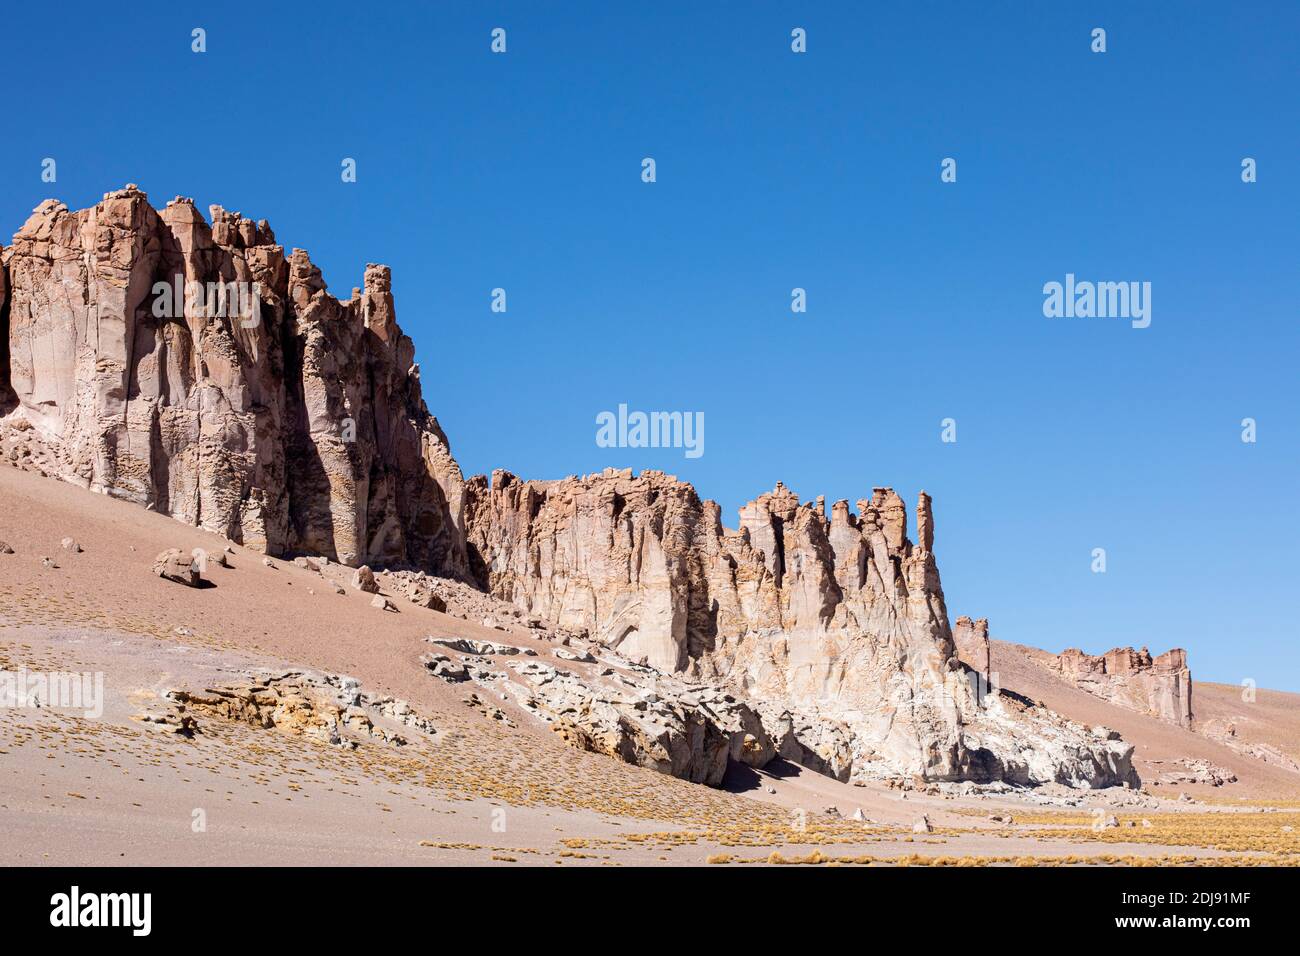 Stone formations at Salar de Tara y Aguas Calientes I, Los Flamencos National Reserve, Antofagasta Region, Chile. Stock Photo